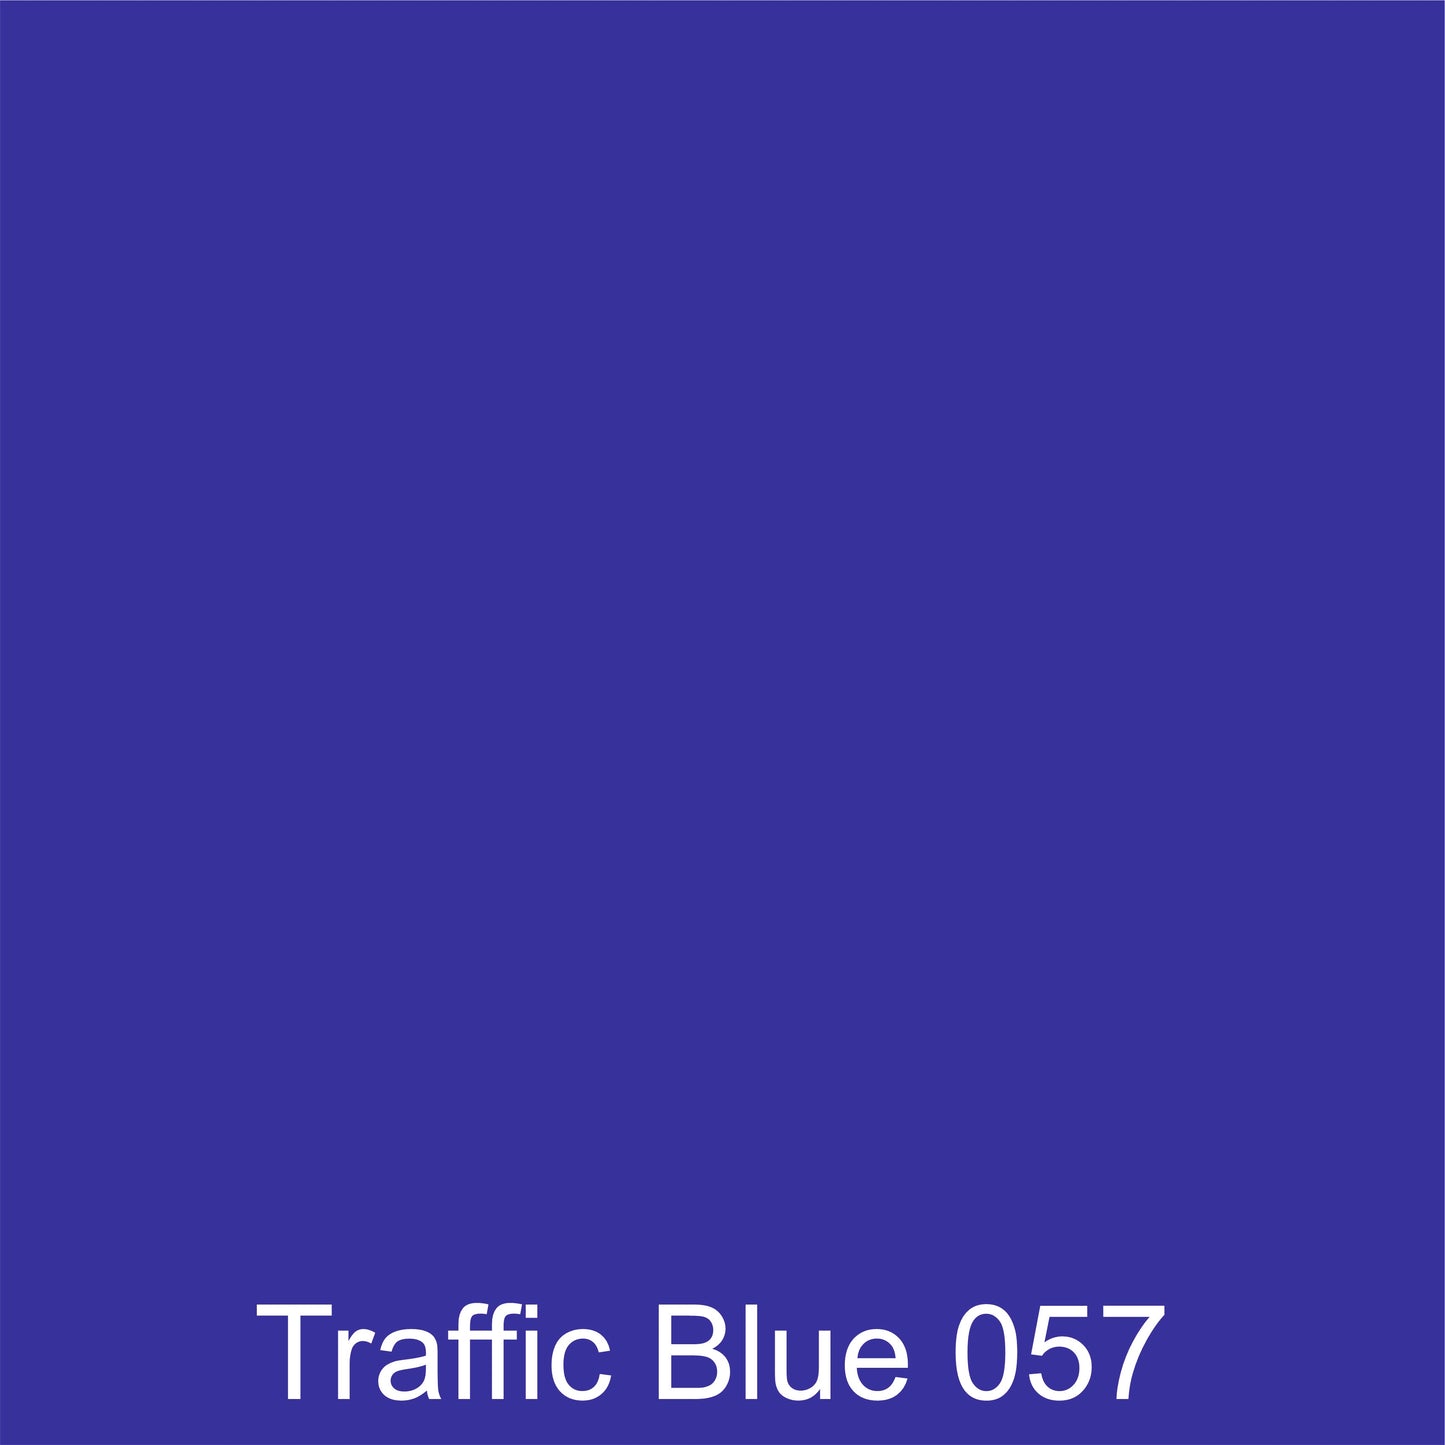 Oracal 651 Matt :- Traffic Blue - 057